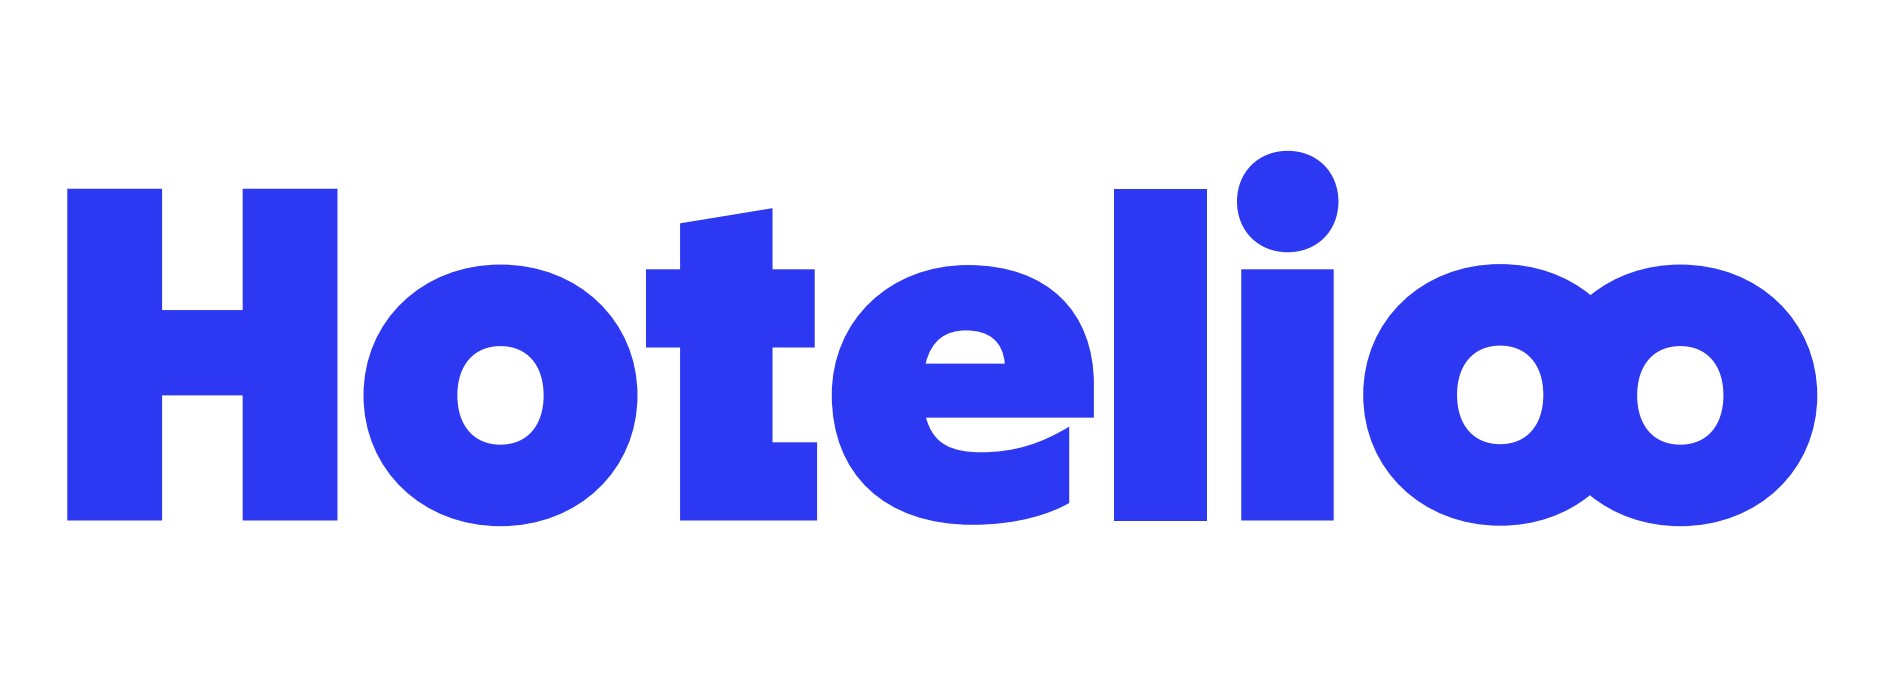 Hotelioo logo